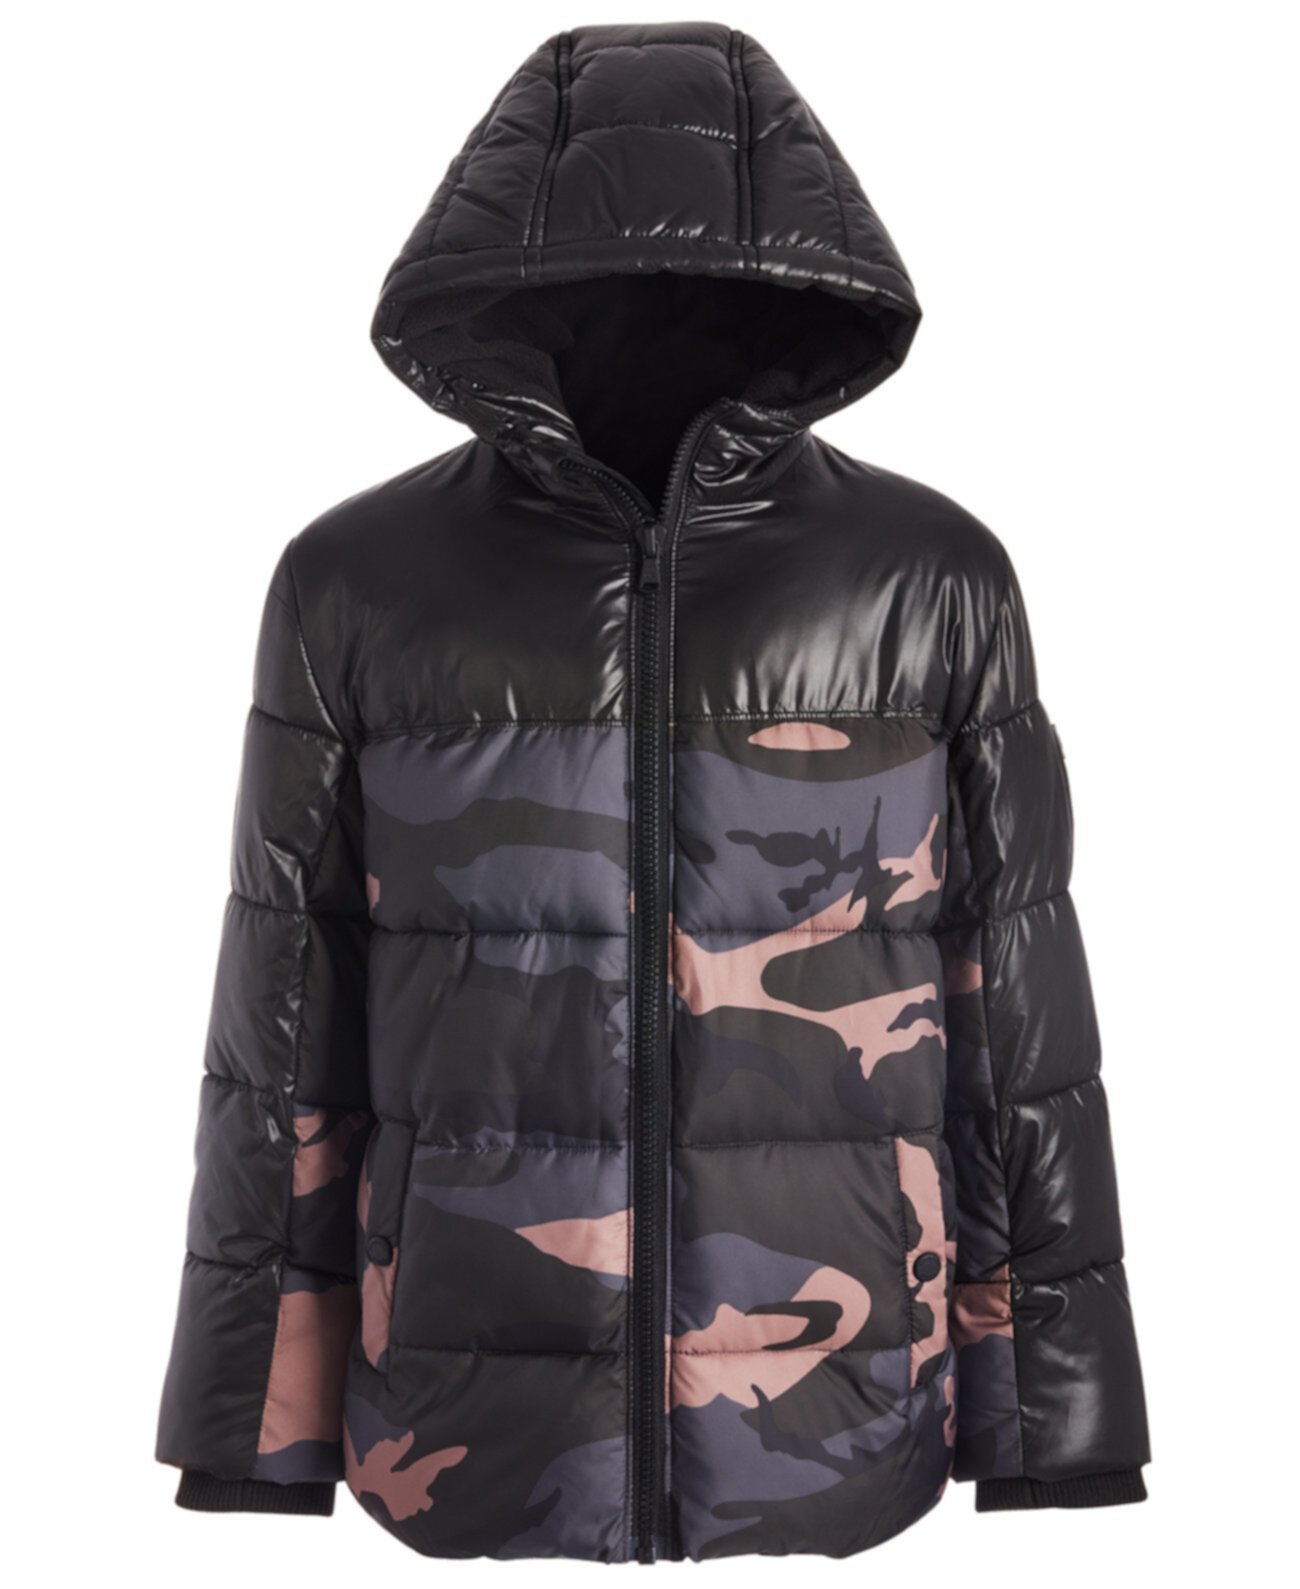 Куртка-пуховик с капюшоном и камуфляжным принтом Toddler Boys Michael Kors